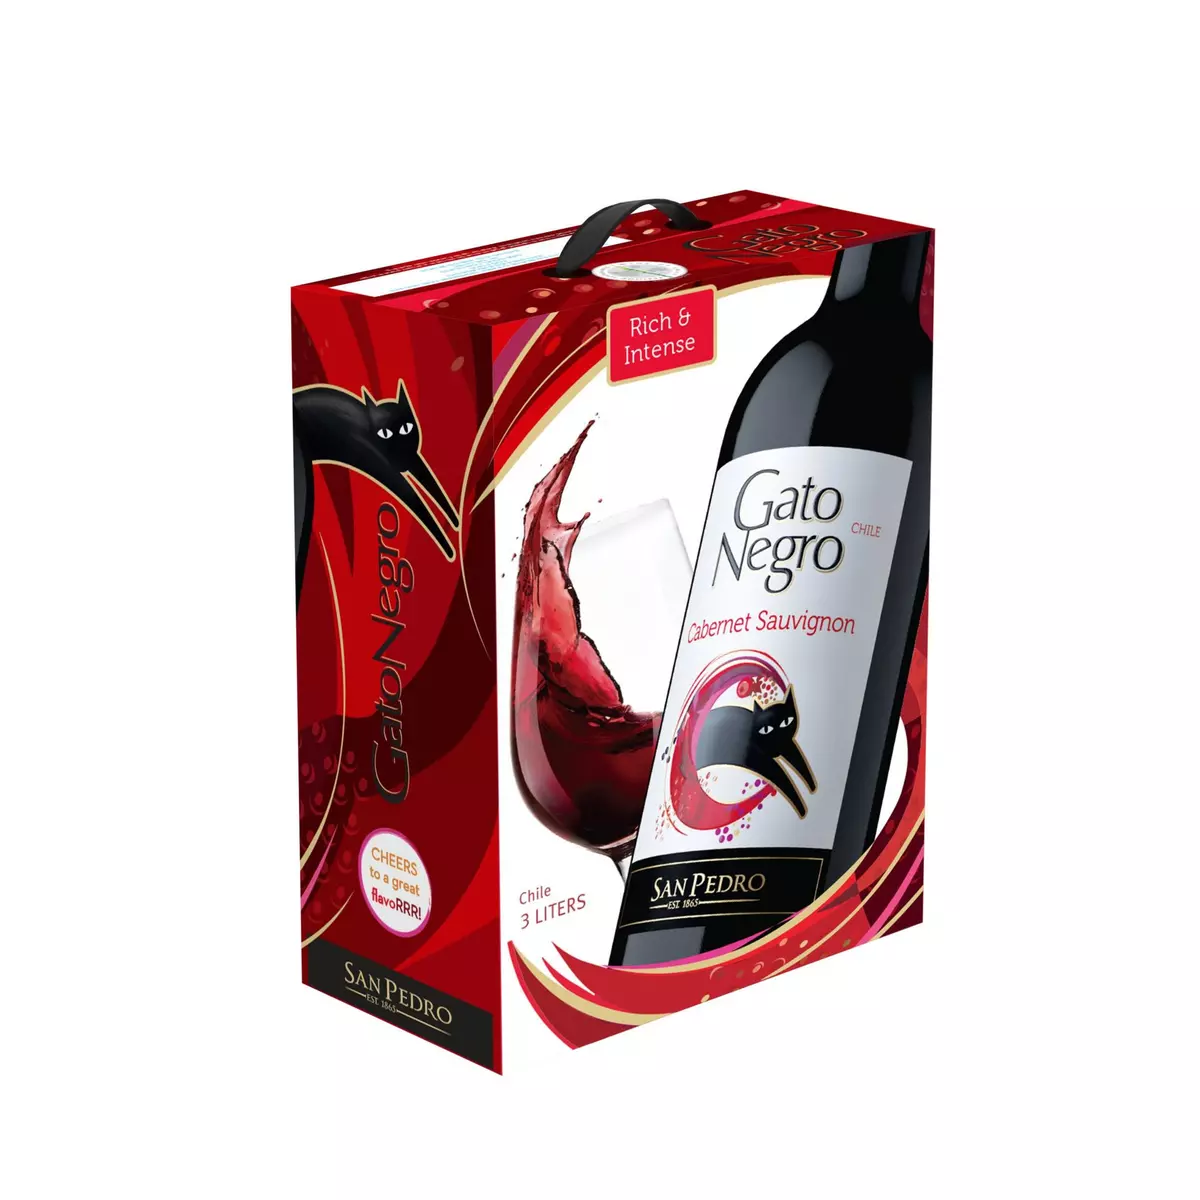 GATO NEGRO Chili cabernet Sauvignon rouge BIB 3l